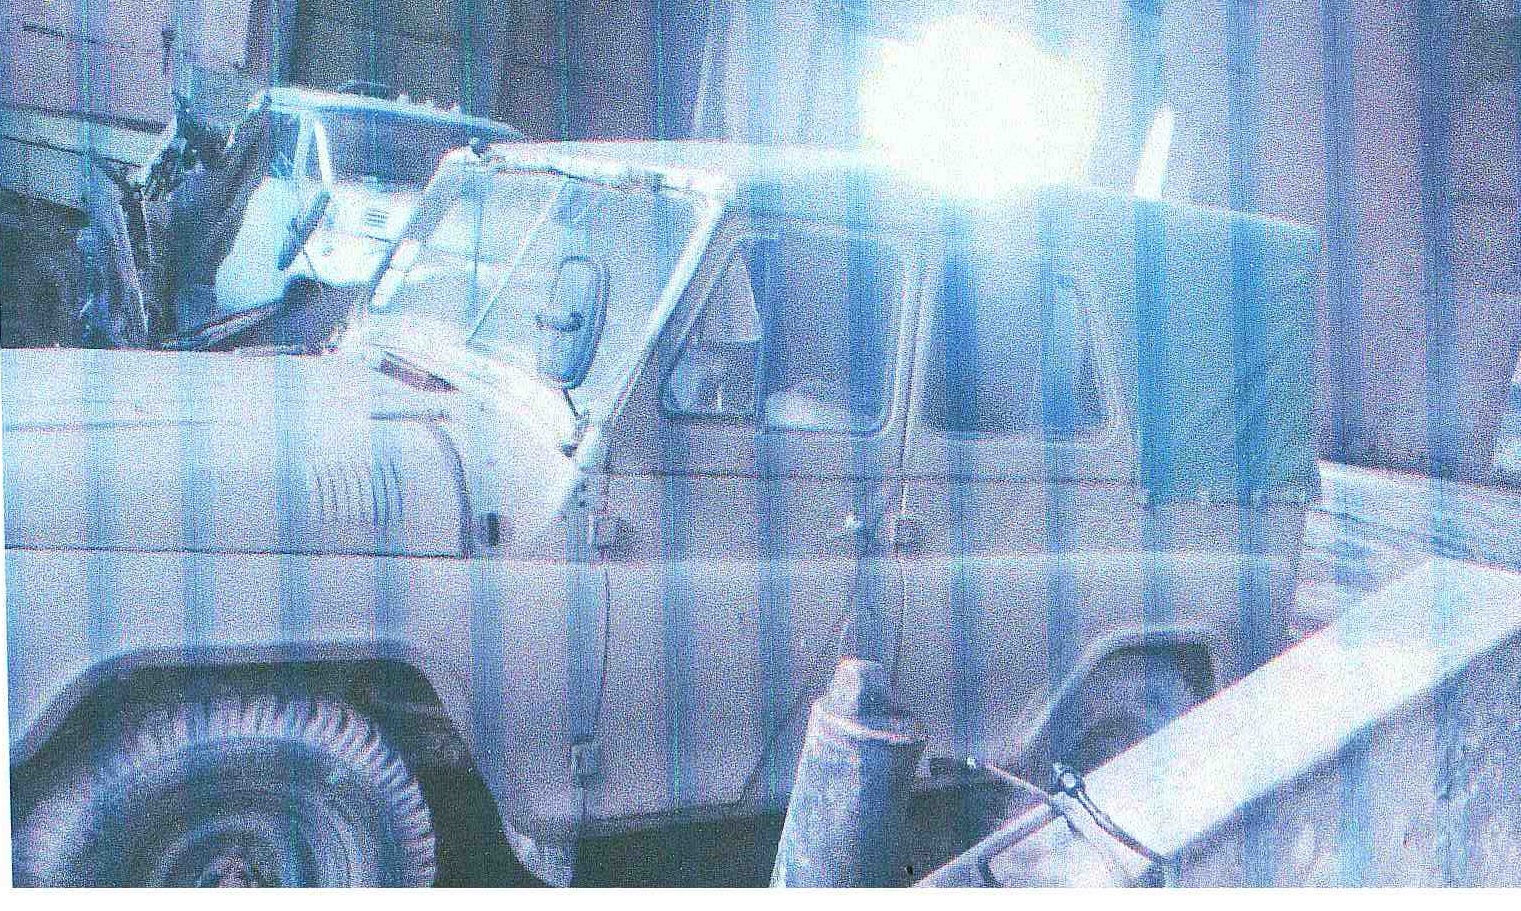 УАЗ 469 Б, 1981 року випуску, державний номер 0597ХОВ